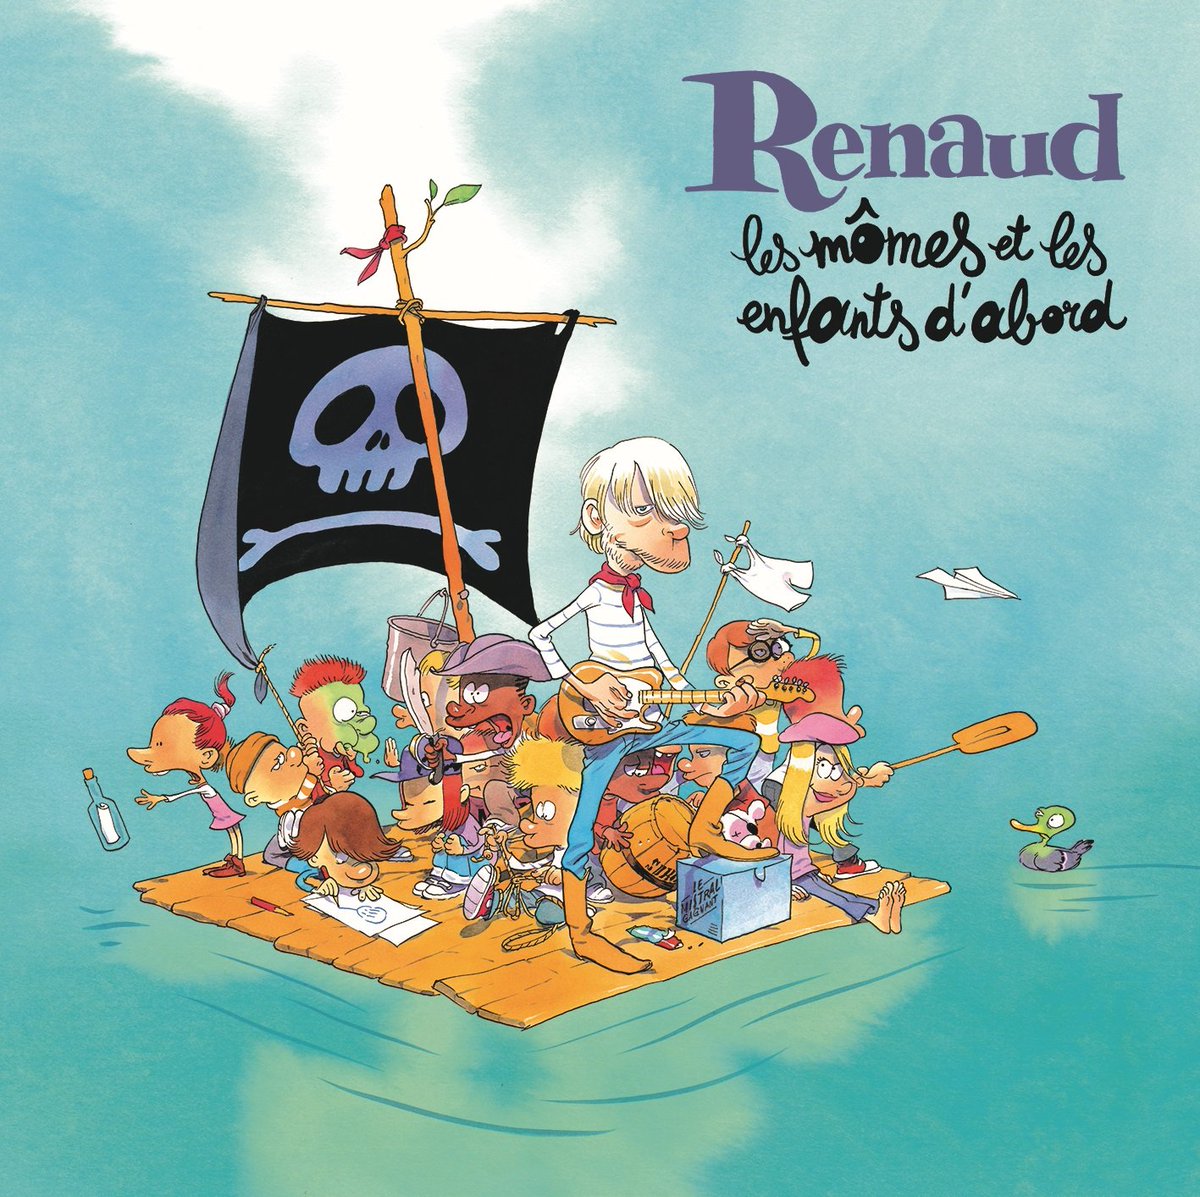 Nouvel album de Renaud : un célèbre illustrateur réalise la pochette de l’album